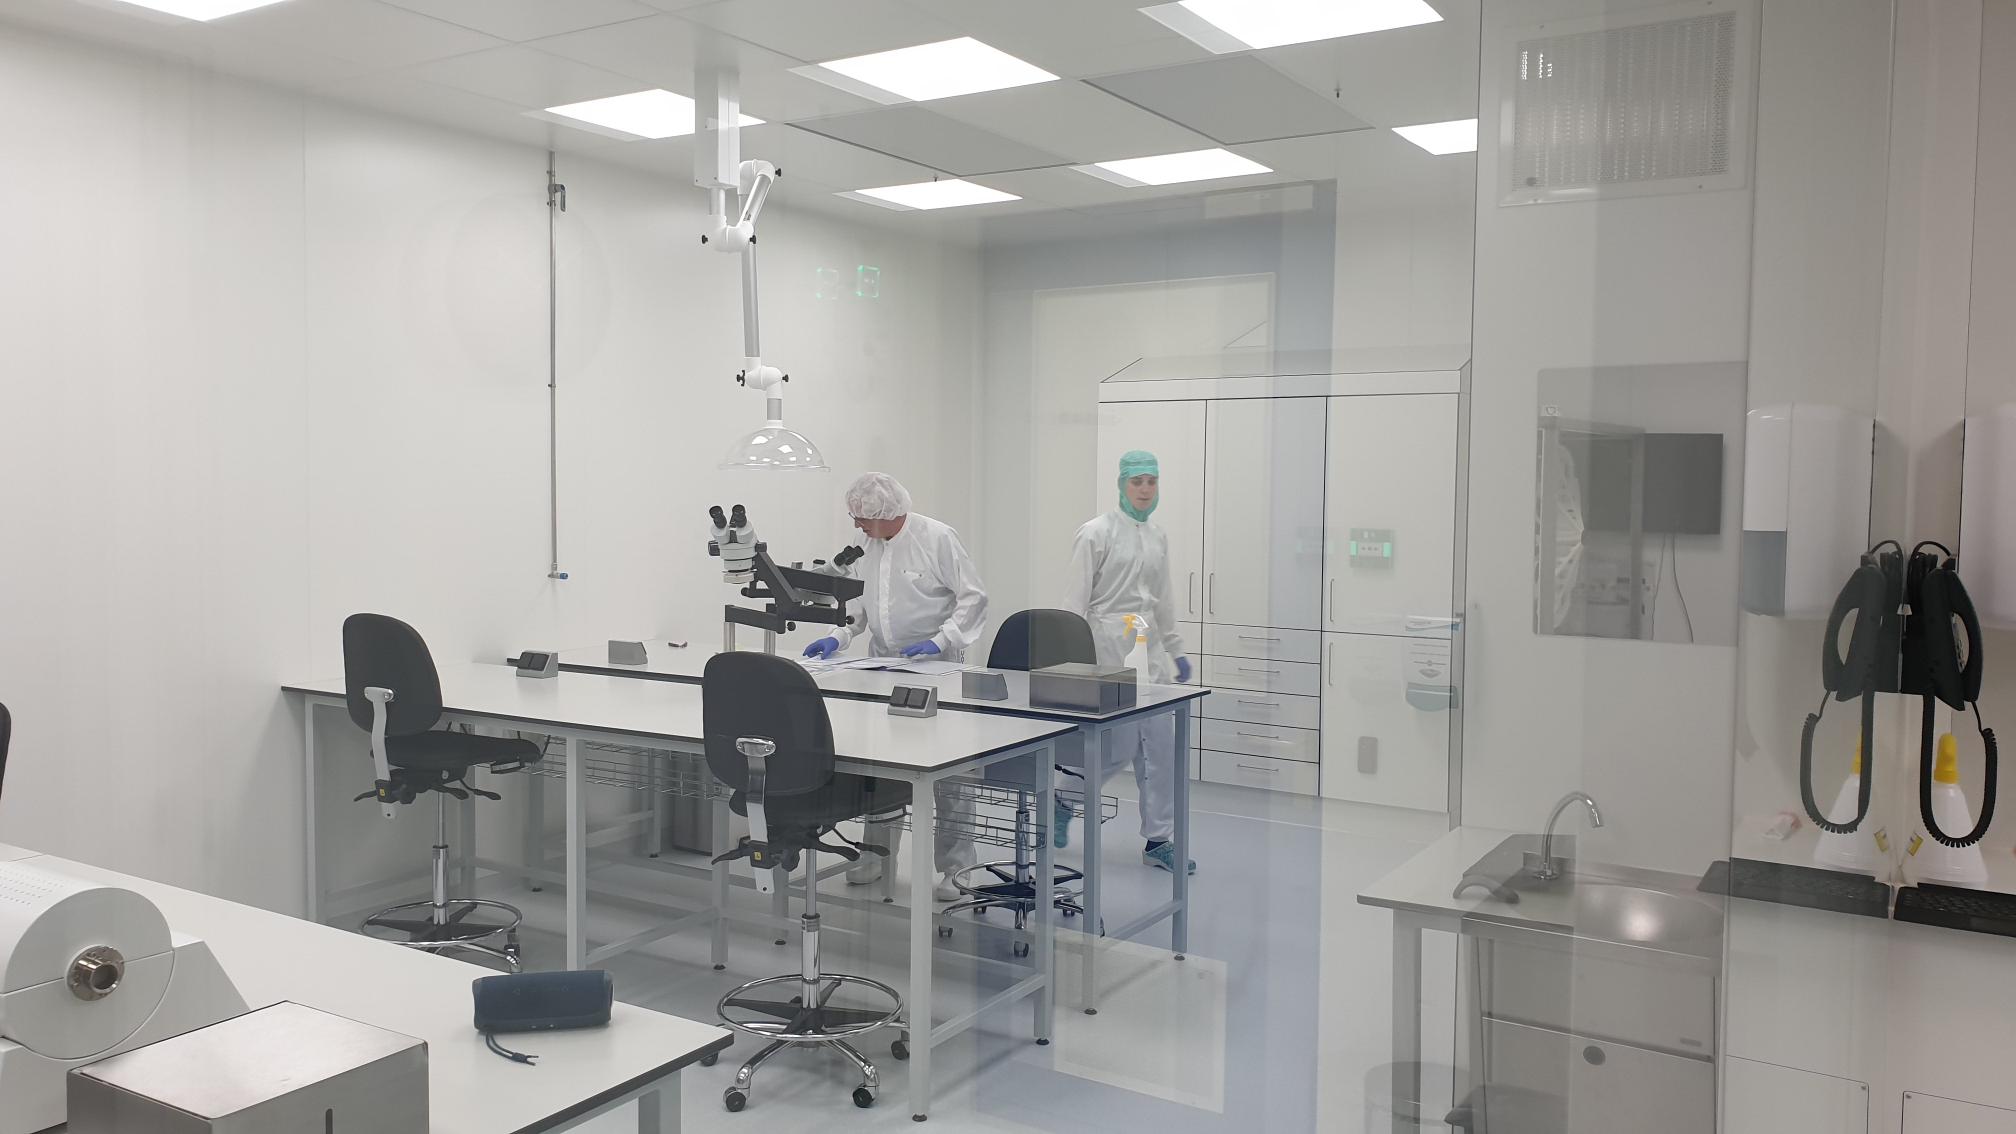 Ultraschoon laboratorium oftewel cleanroom in midden-nederland huren